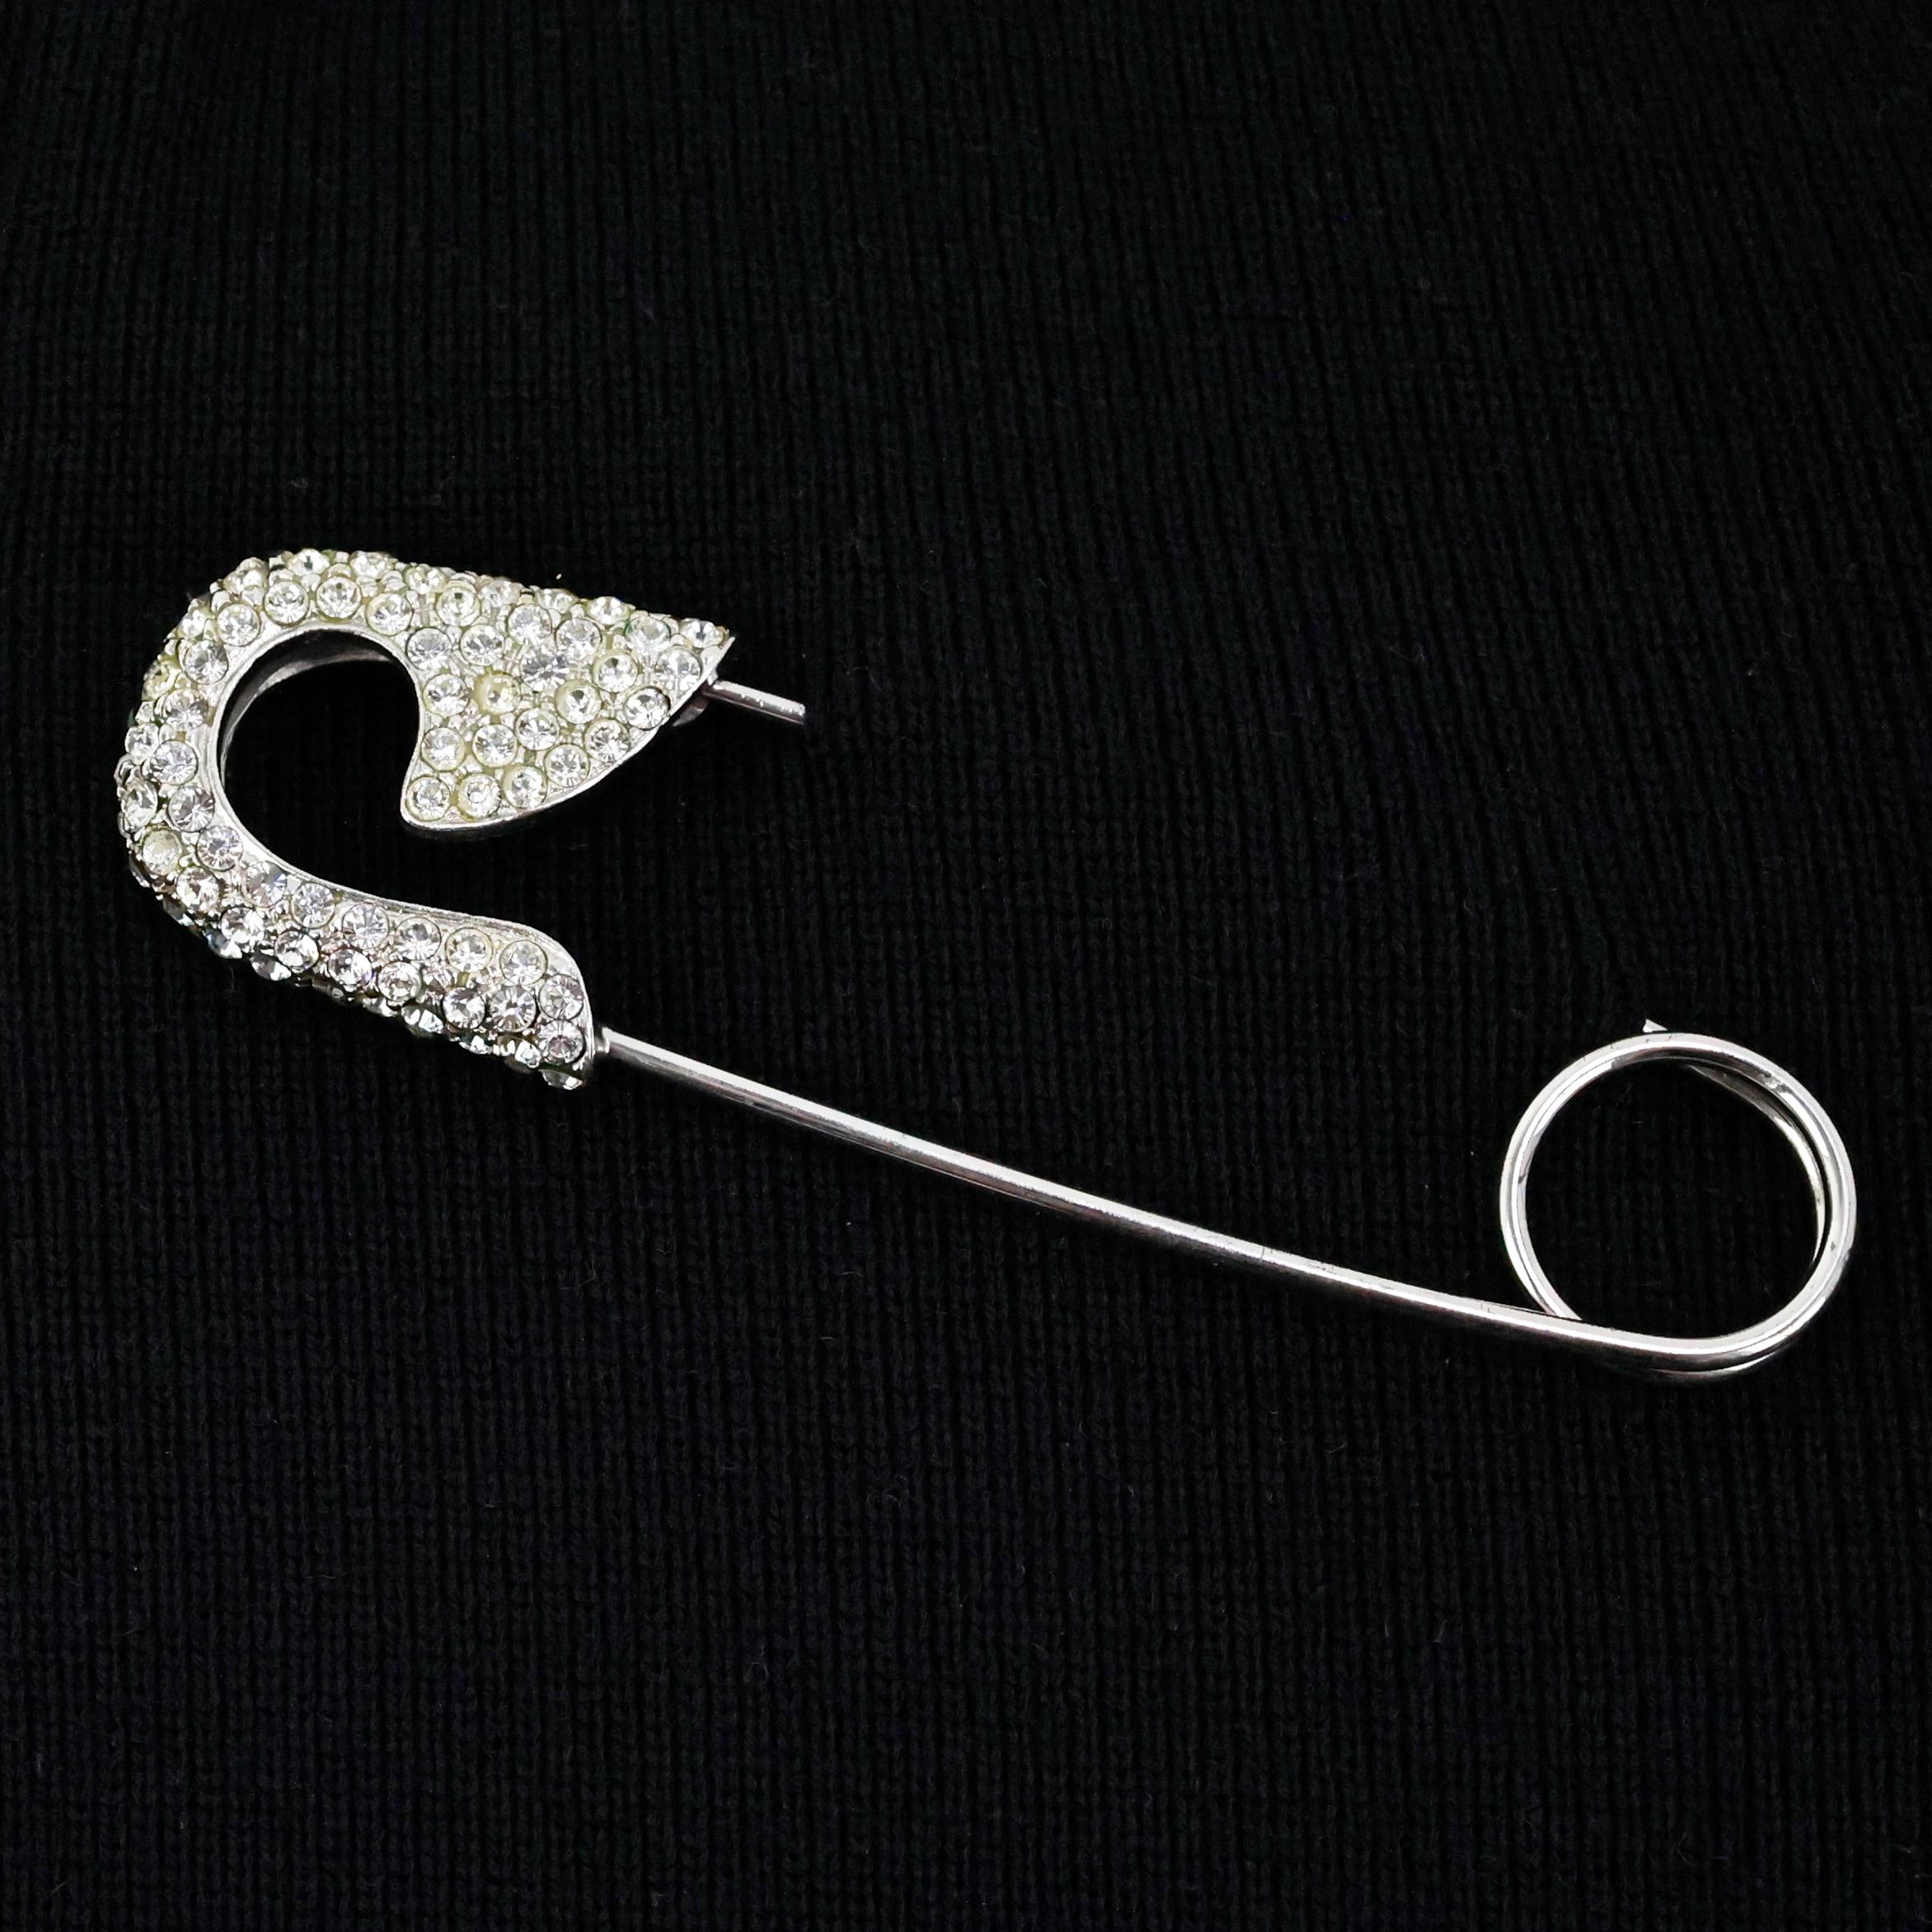 Christian Dior übergroße, mit Kristallen verzierte Sicherheitsnadel-Brosche. 

Bedingung:
Wirklich gut.

Abmessungen:
Länge: 11 cm
Breite: 3cm